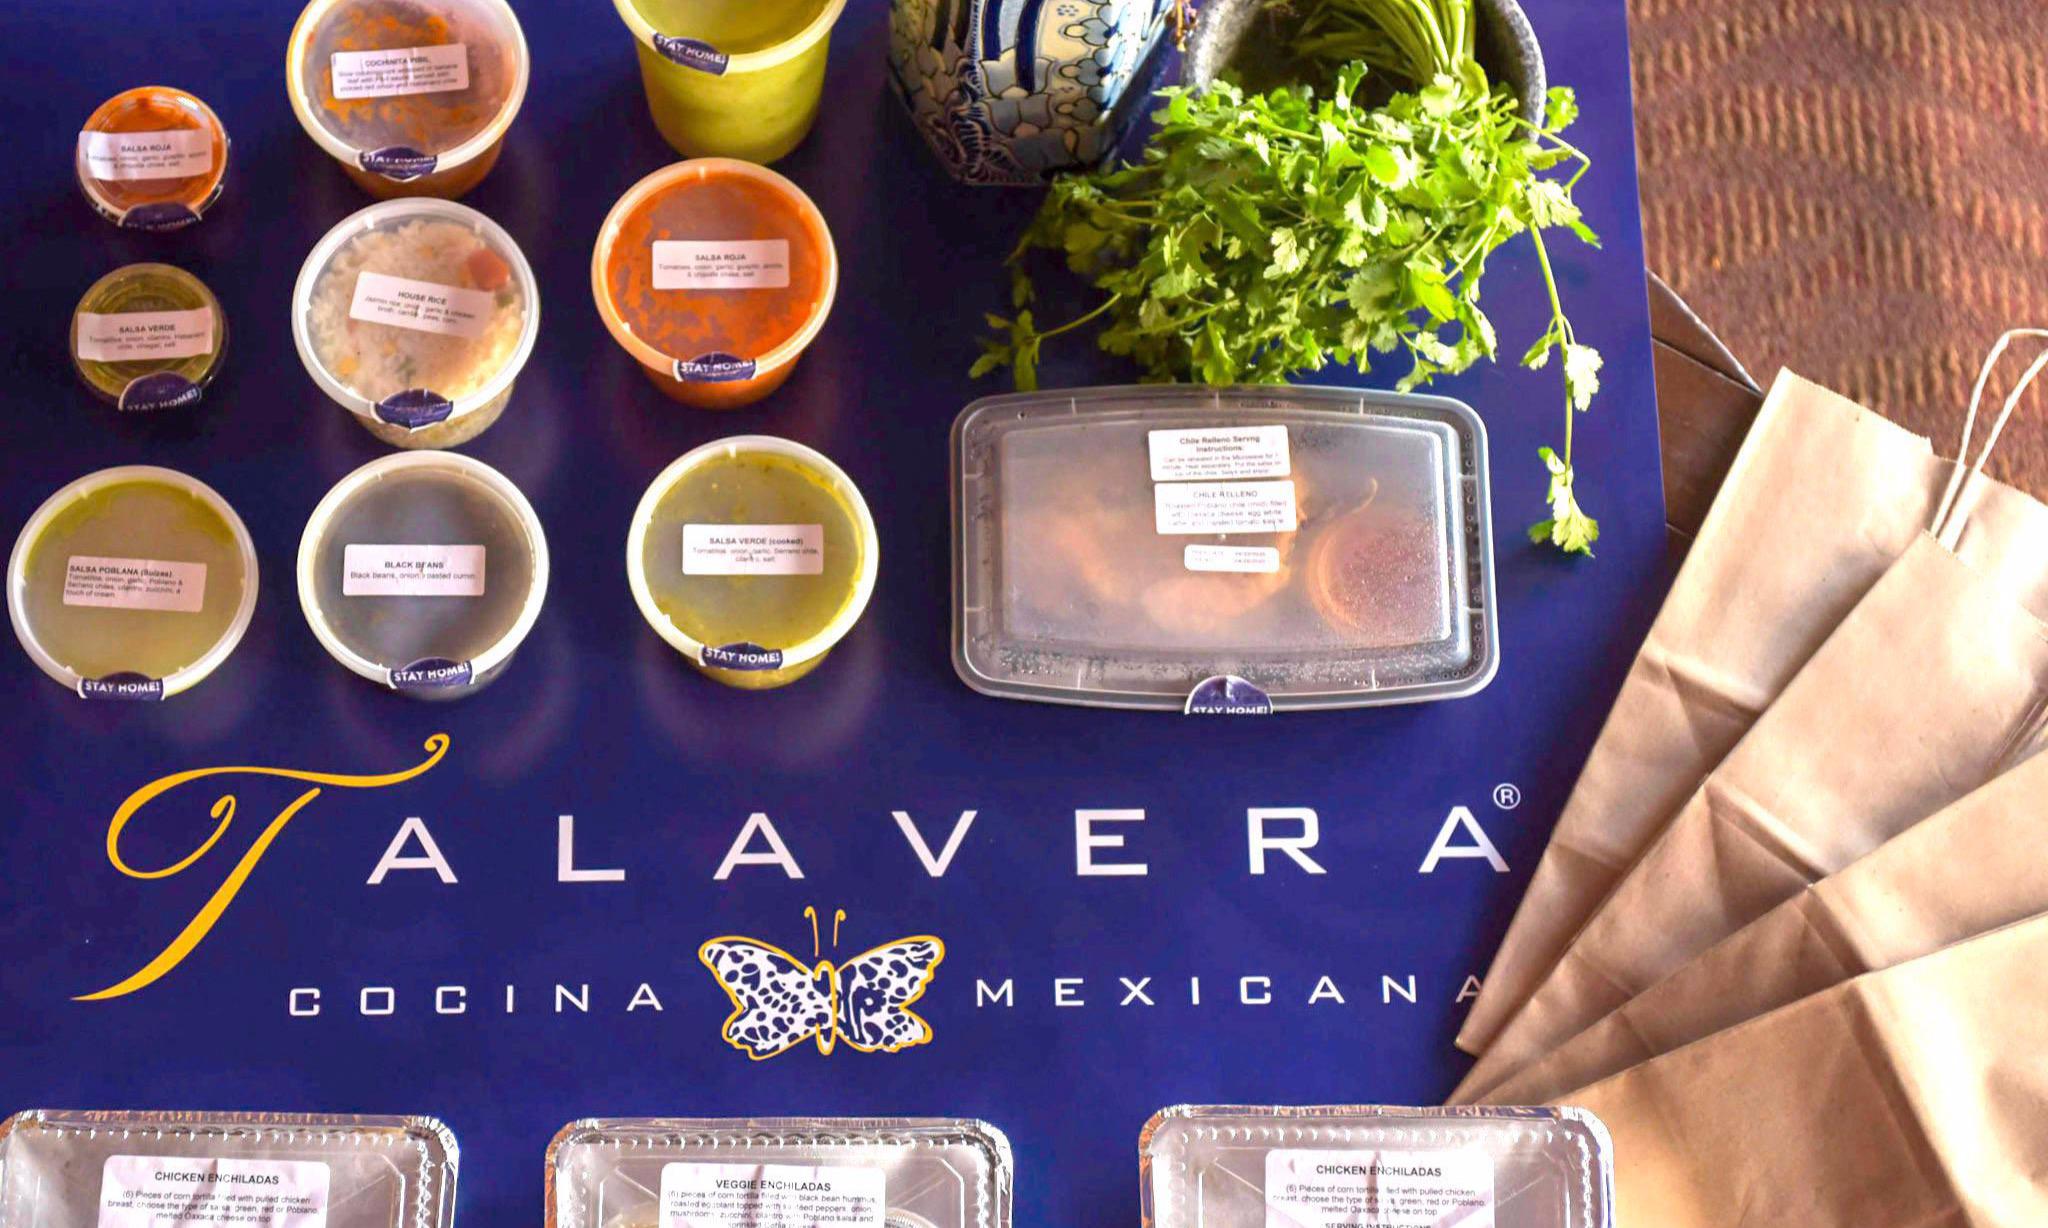 Talavera Cocina Mexicana | Stay Home by Talavera Photo